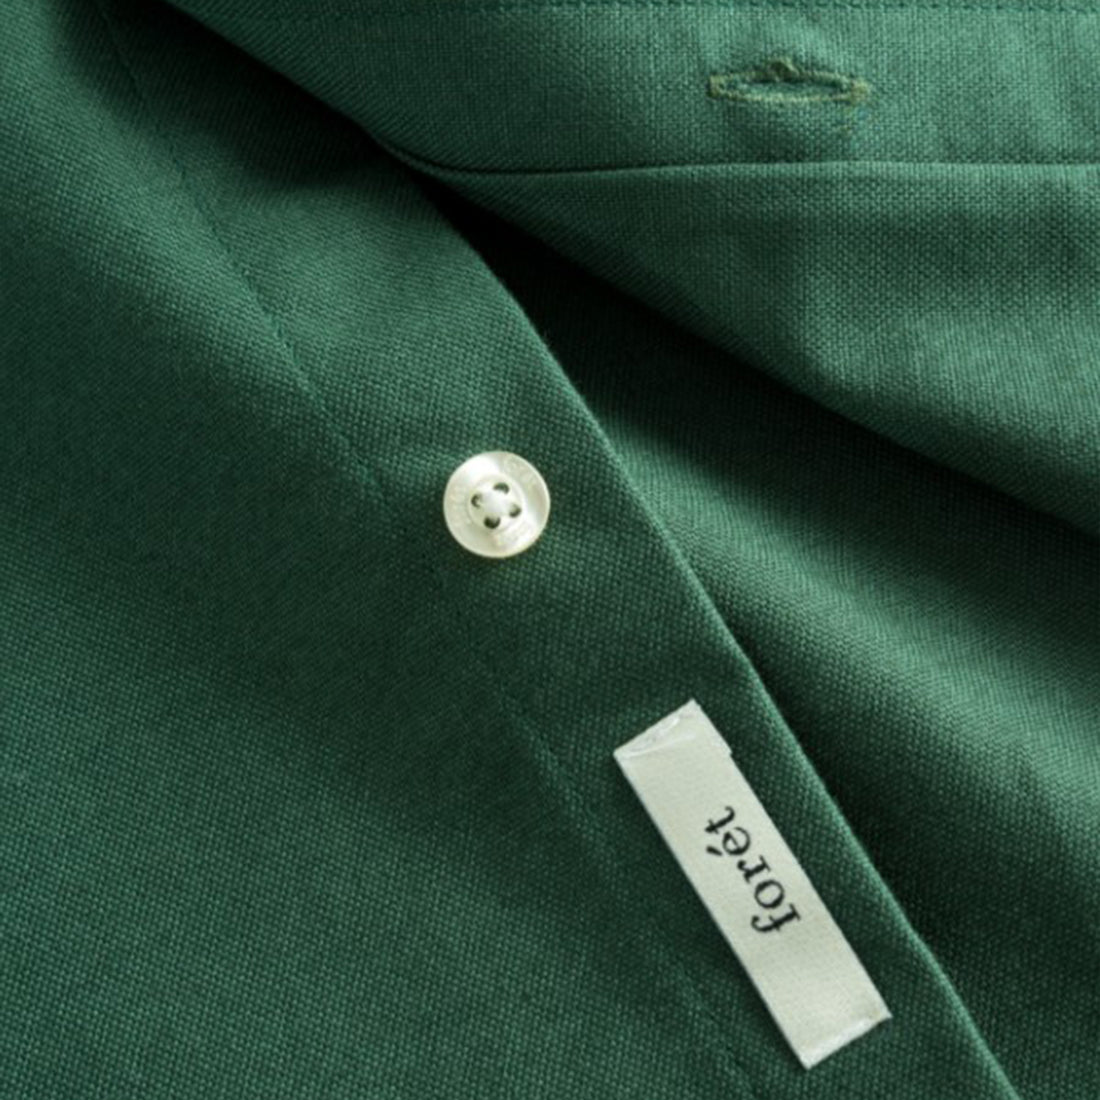 Forét long sleeve shirt - Life Shirt - Green